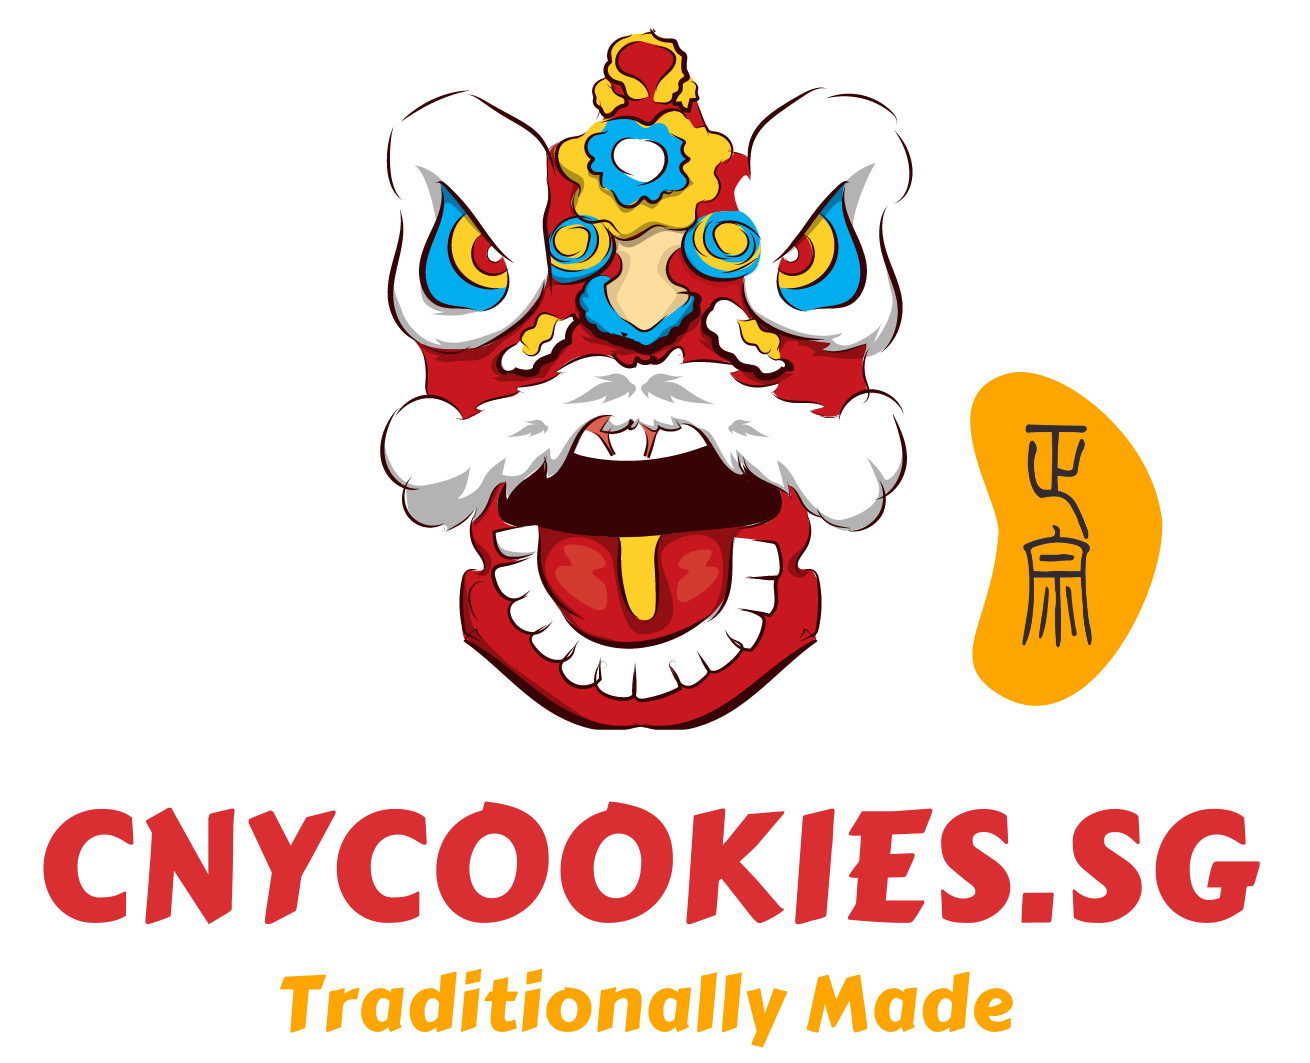 CNY cookies logo